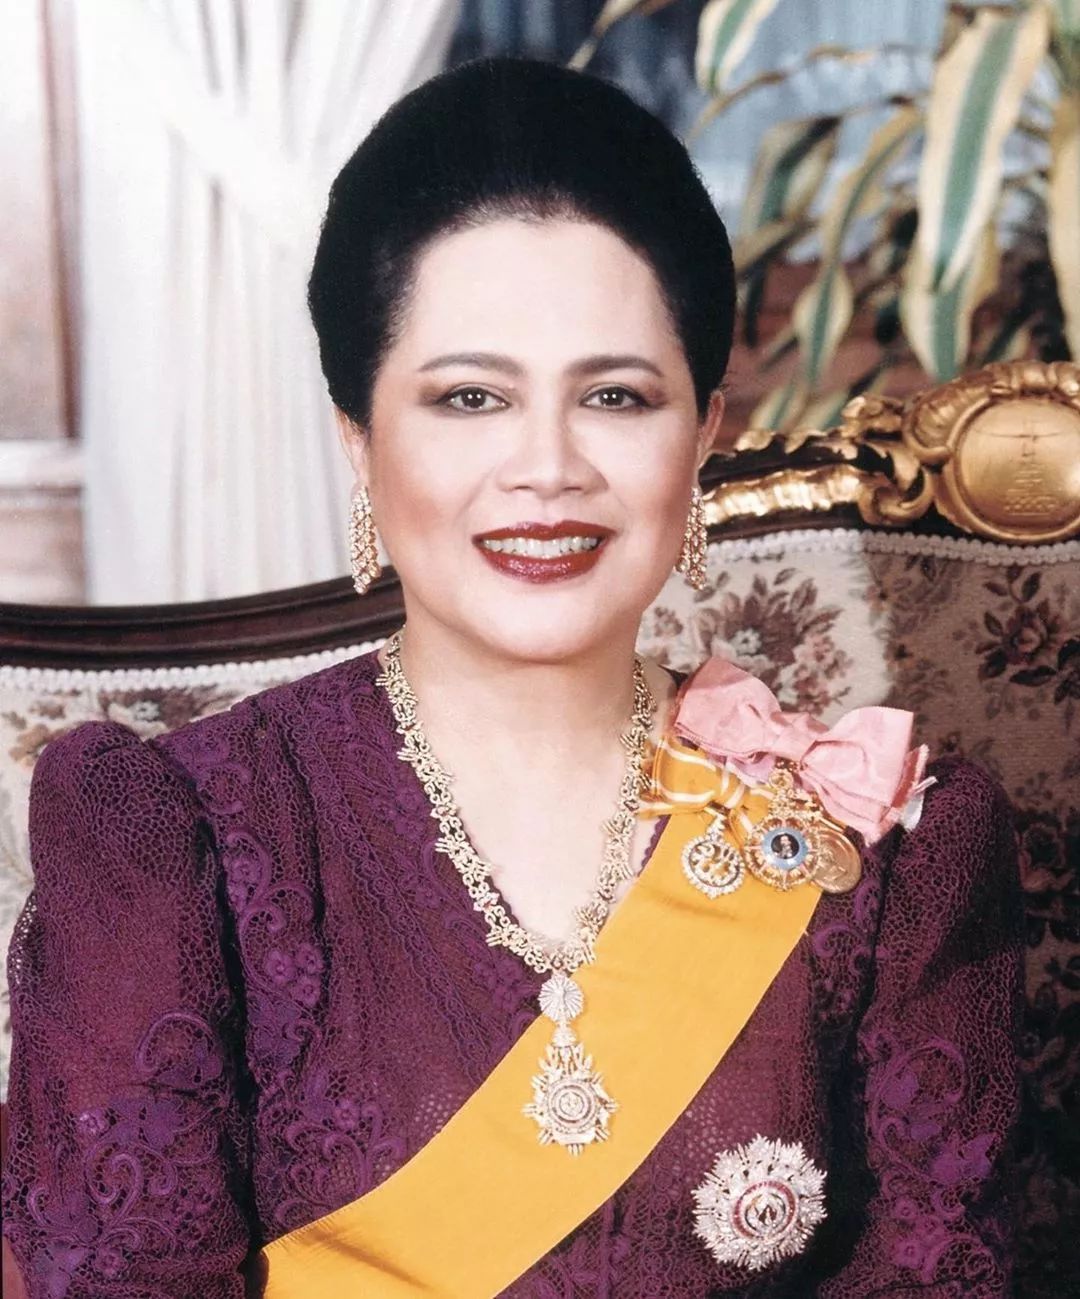 为了看新王妃的美照泰国人民把网站挤瘫痪了